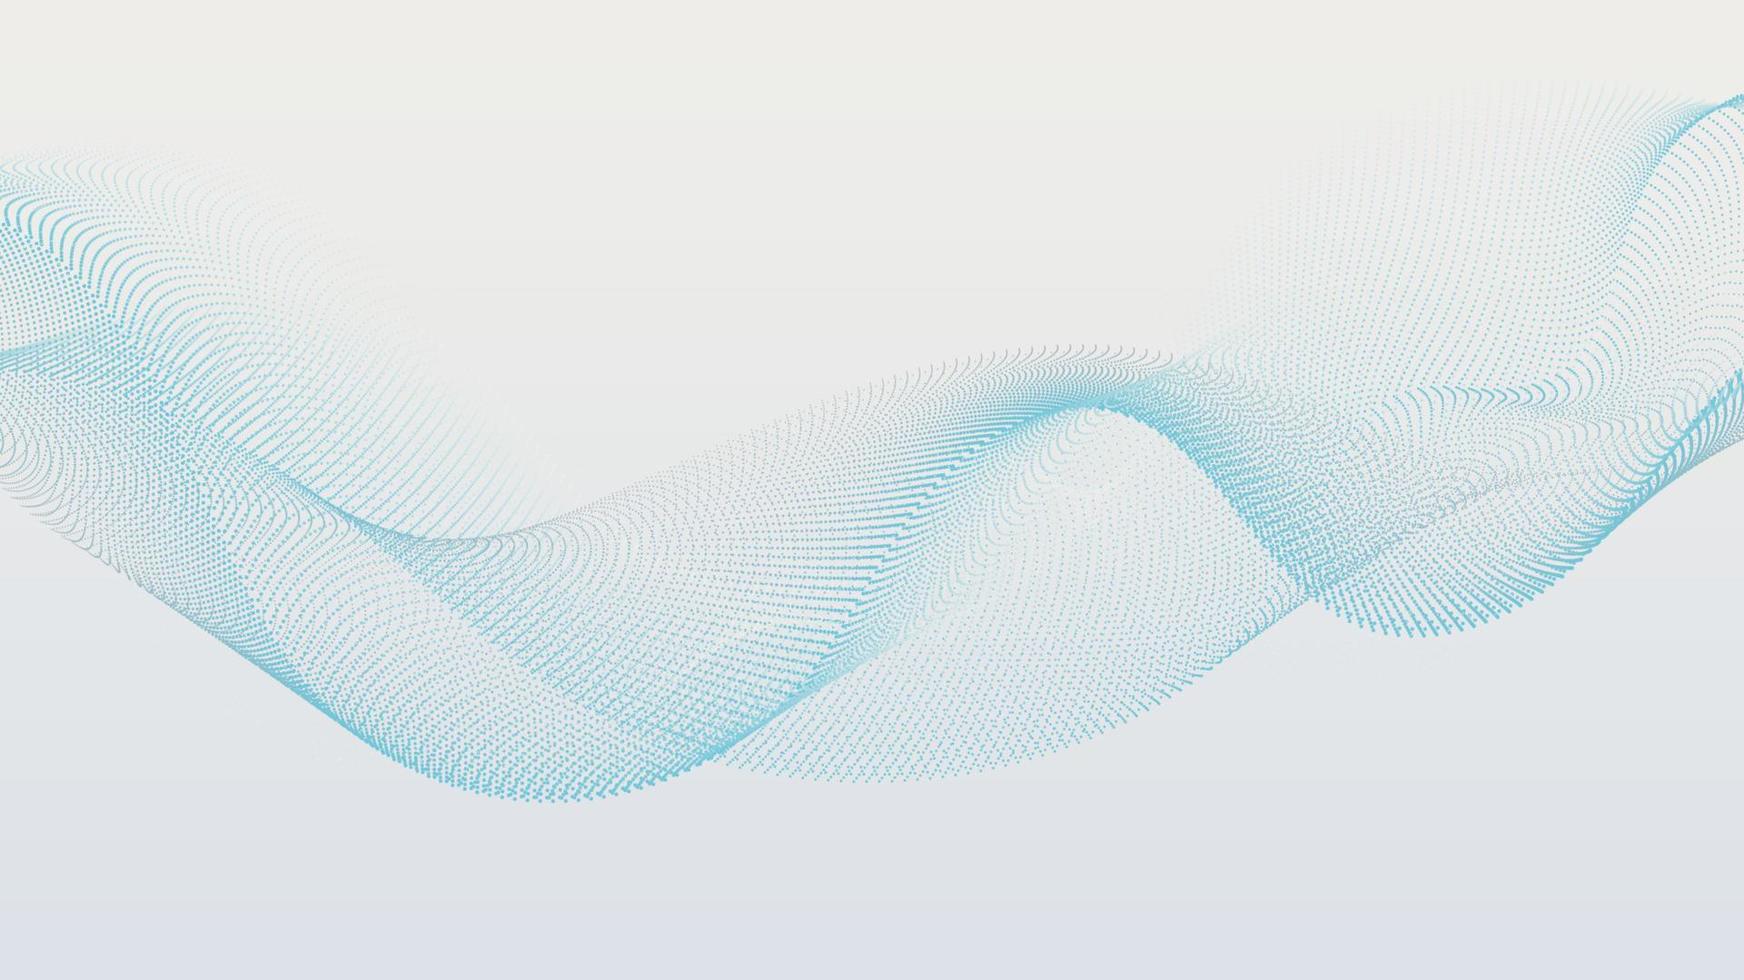 abstrakt digital teknologi trogen blå prickar dynamisk ljud Vinka strömmande partiklar på vit bakgrund vektor